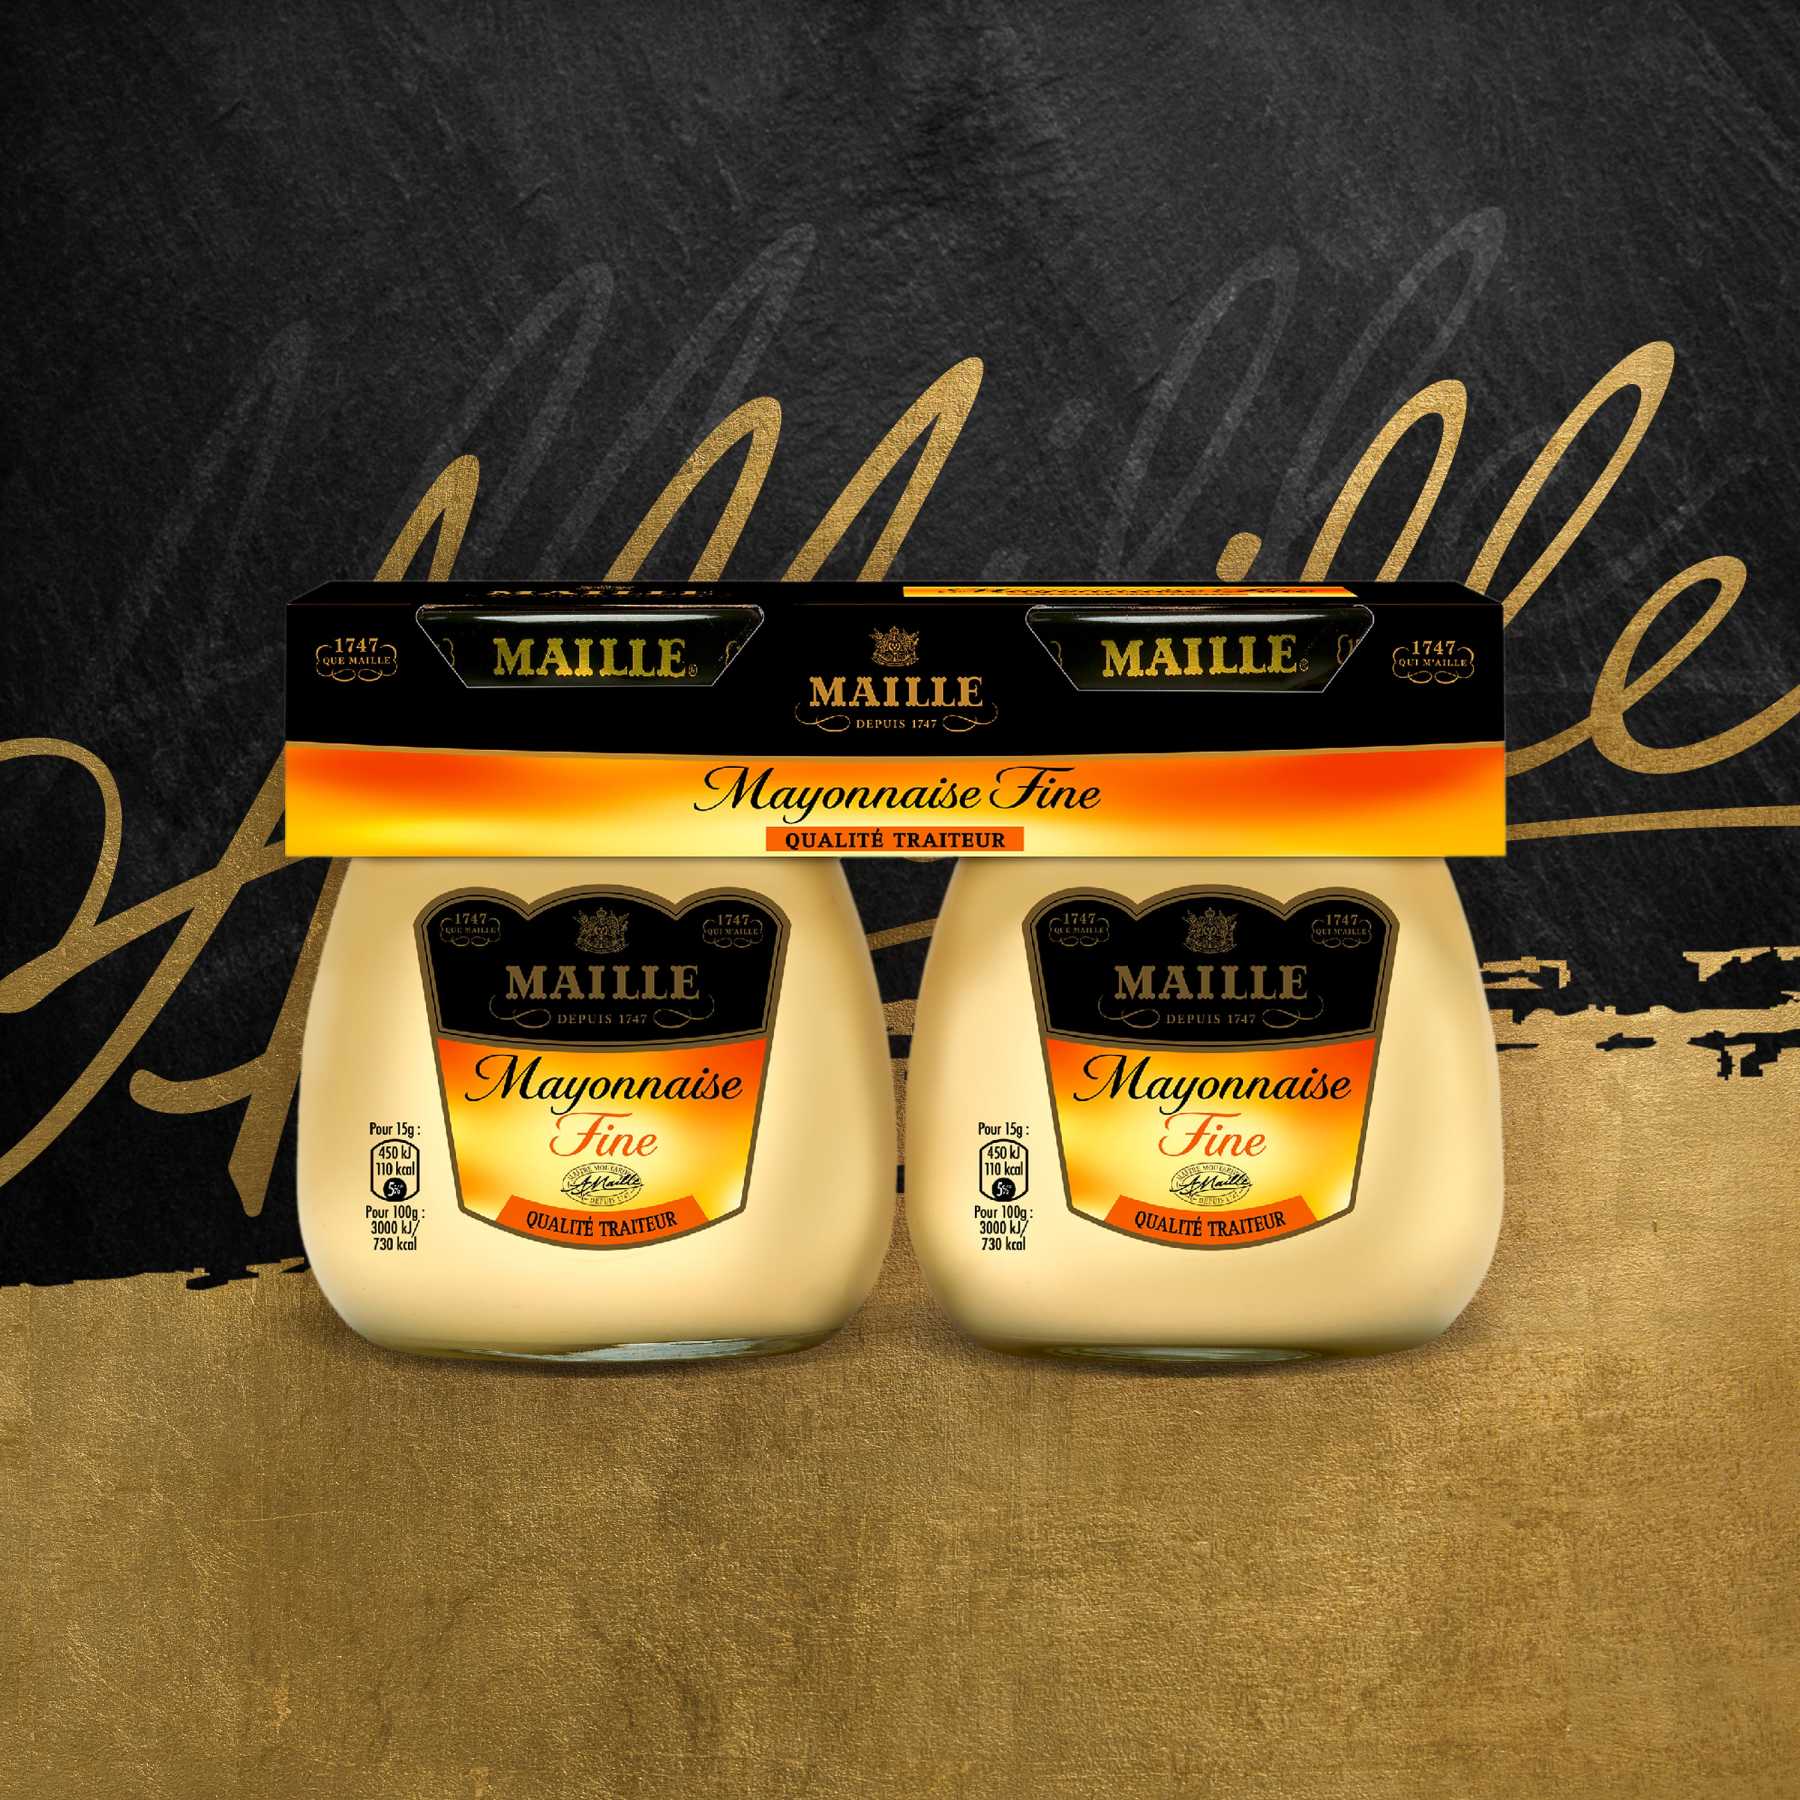 Maille - Mayonnaise Fine Fraiche Qualité Traiteur au rayon frais 2 x 125 g, new visual